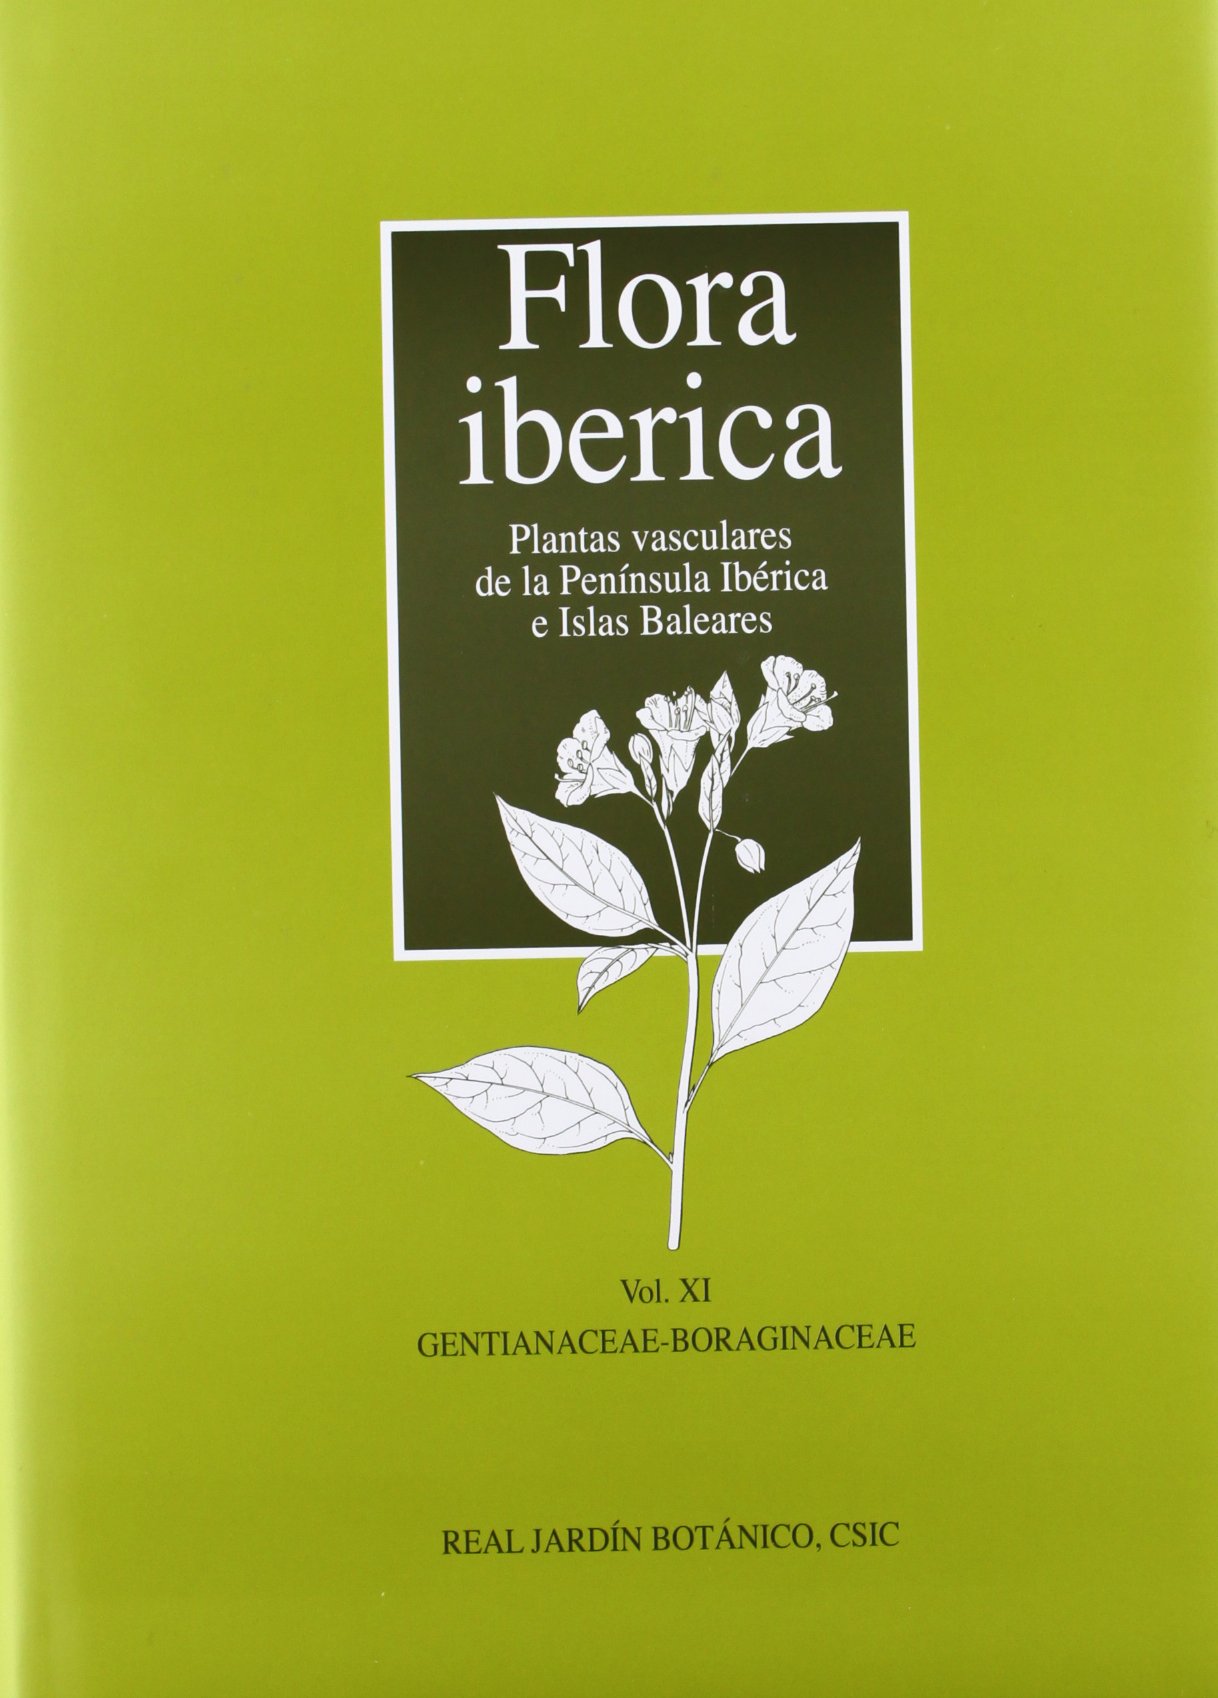 Imagen de portada del libro Flora ibérica: plantas vasculares de la Península Ibérica e Islas Baleares